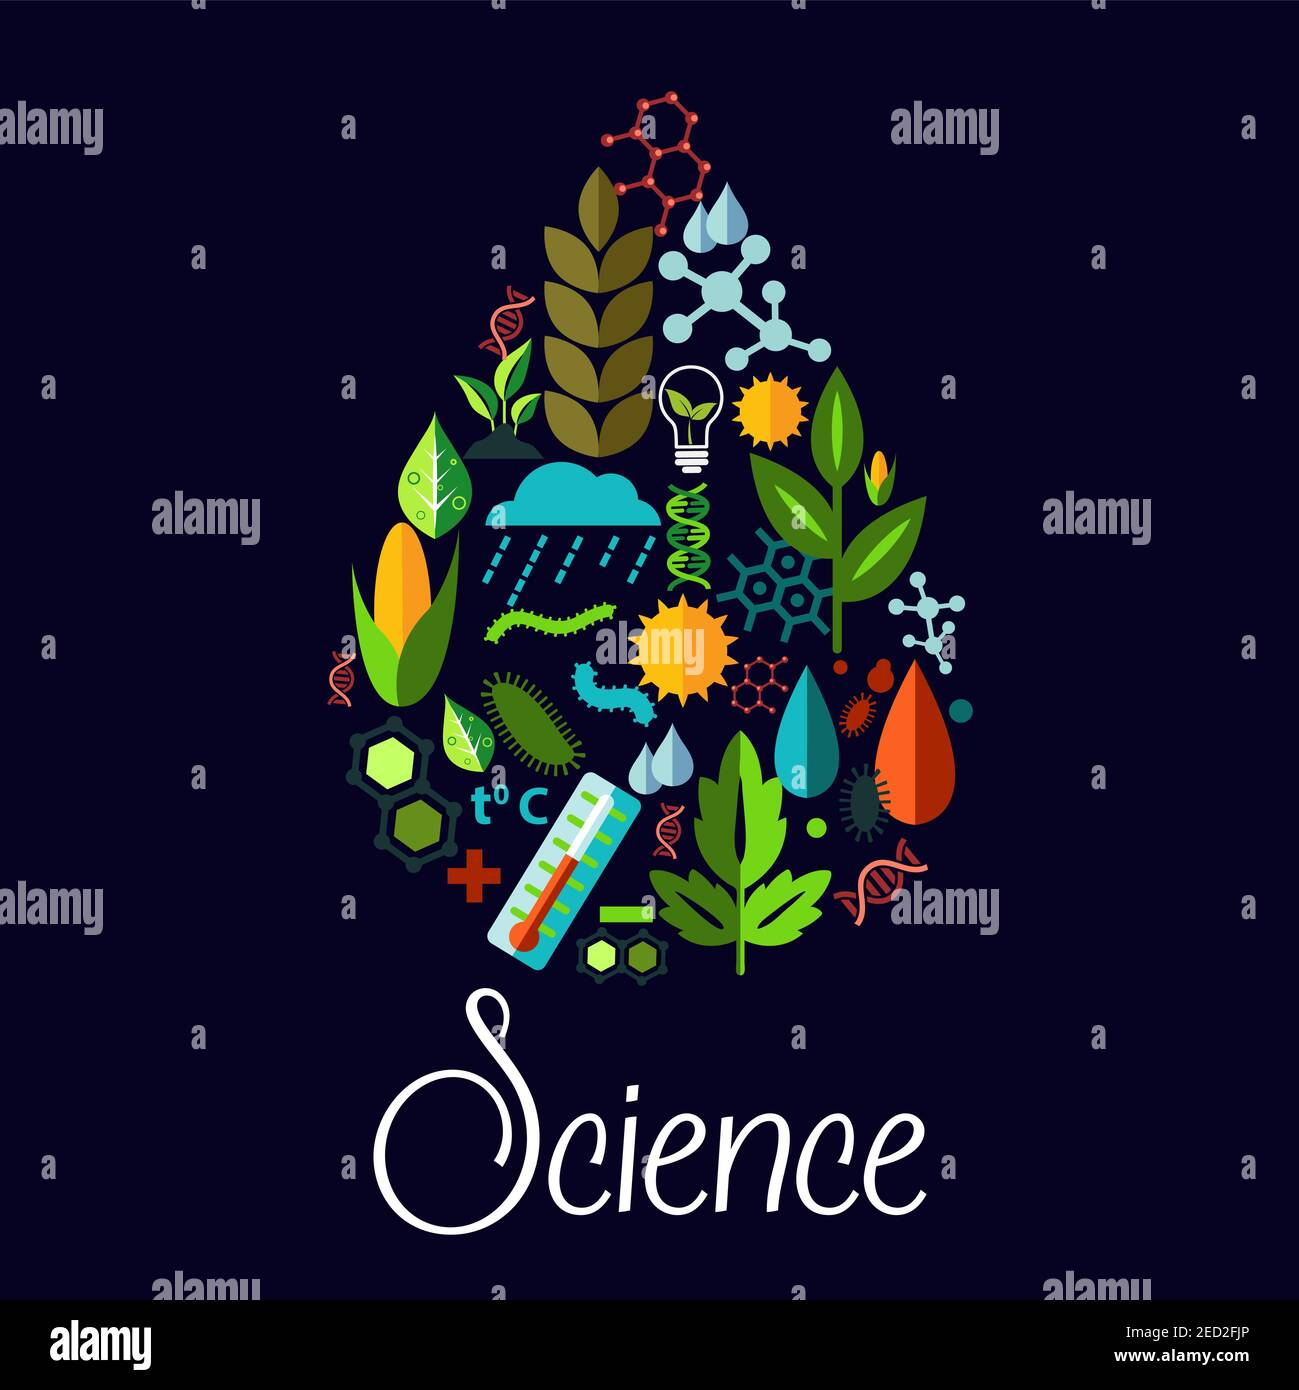 Wissenschaft Vektor-Emblem in Form von Wassertropfen. Muster der Natur Pflanzen, Bäume, natürliche Lebensquellen, Phänomene, generische Vegetation Symbole. Vektorgrafiken Stock Vektor